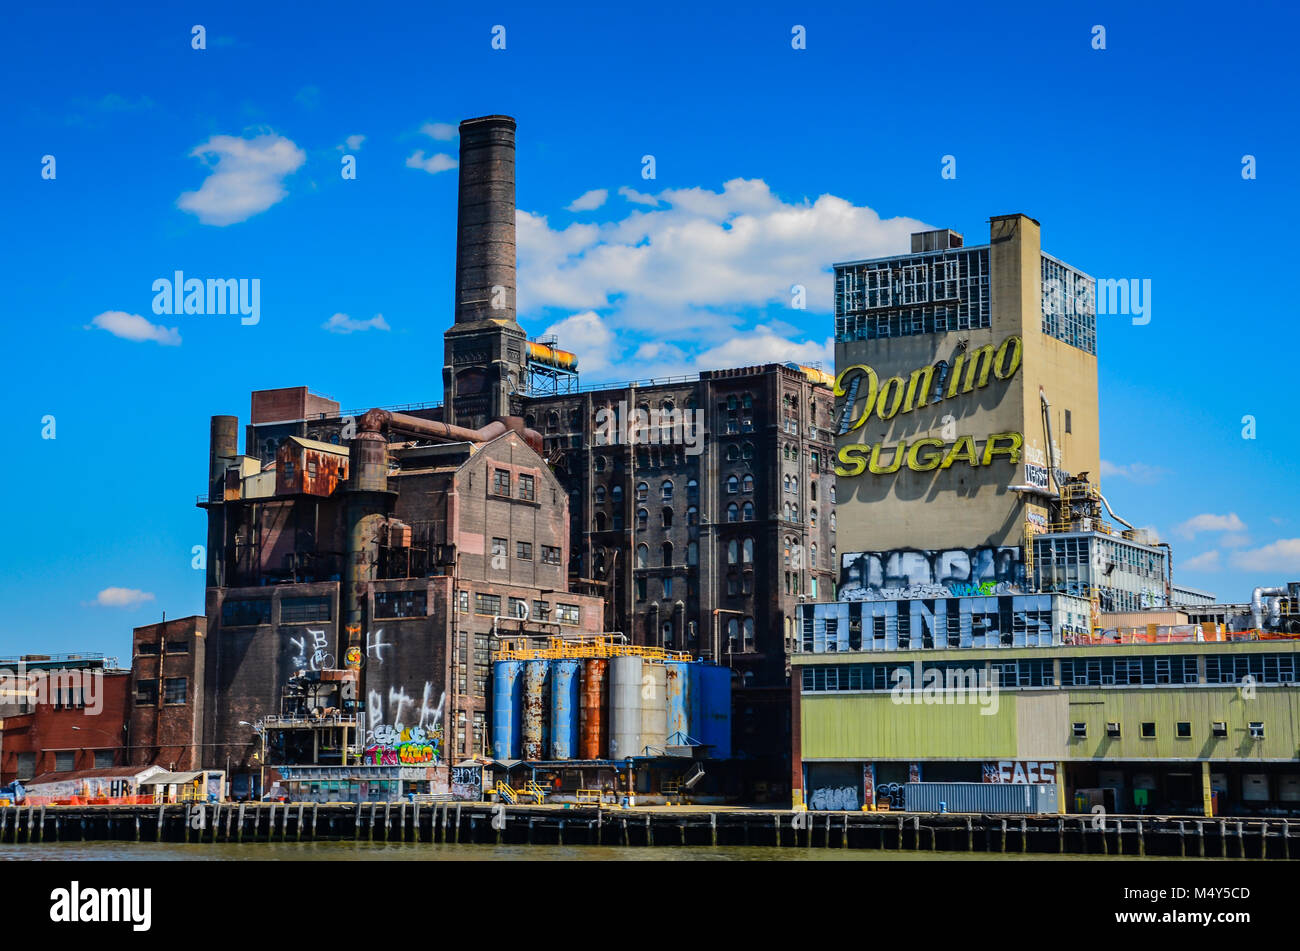 La raffinerie de sucre Domino est une ancienne raffinerie dans le quartier de Williamsburg à Brooklyn, New York. Banque D'Images